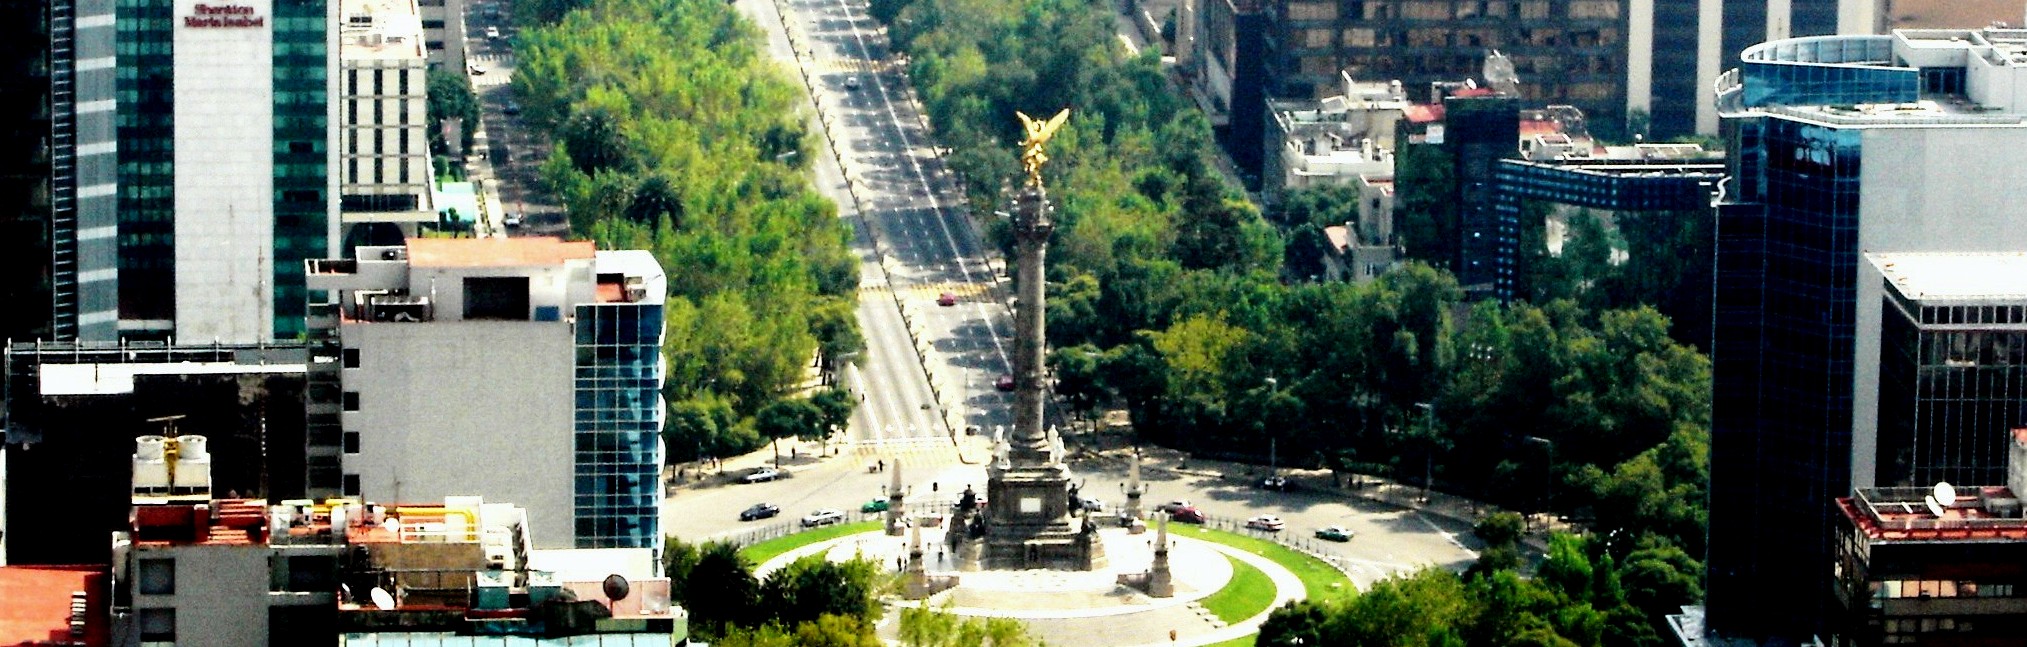 Paseo de la Reforma Visitors' Guide > 